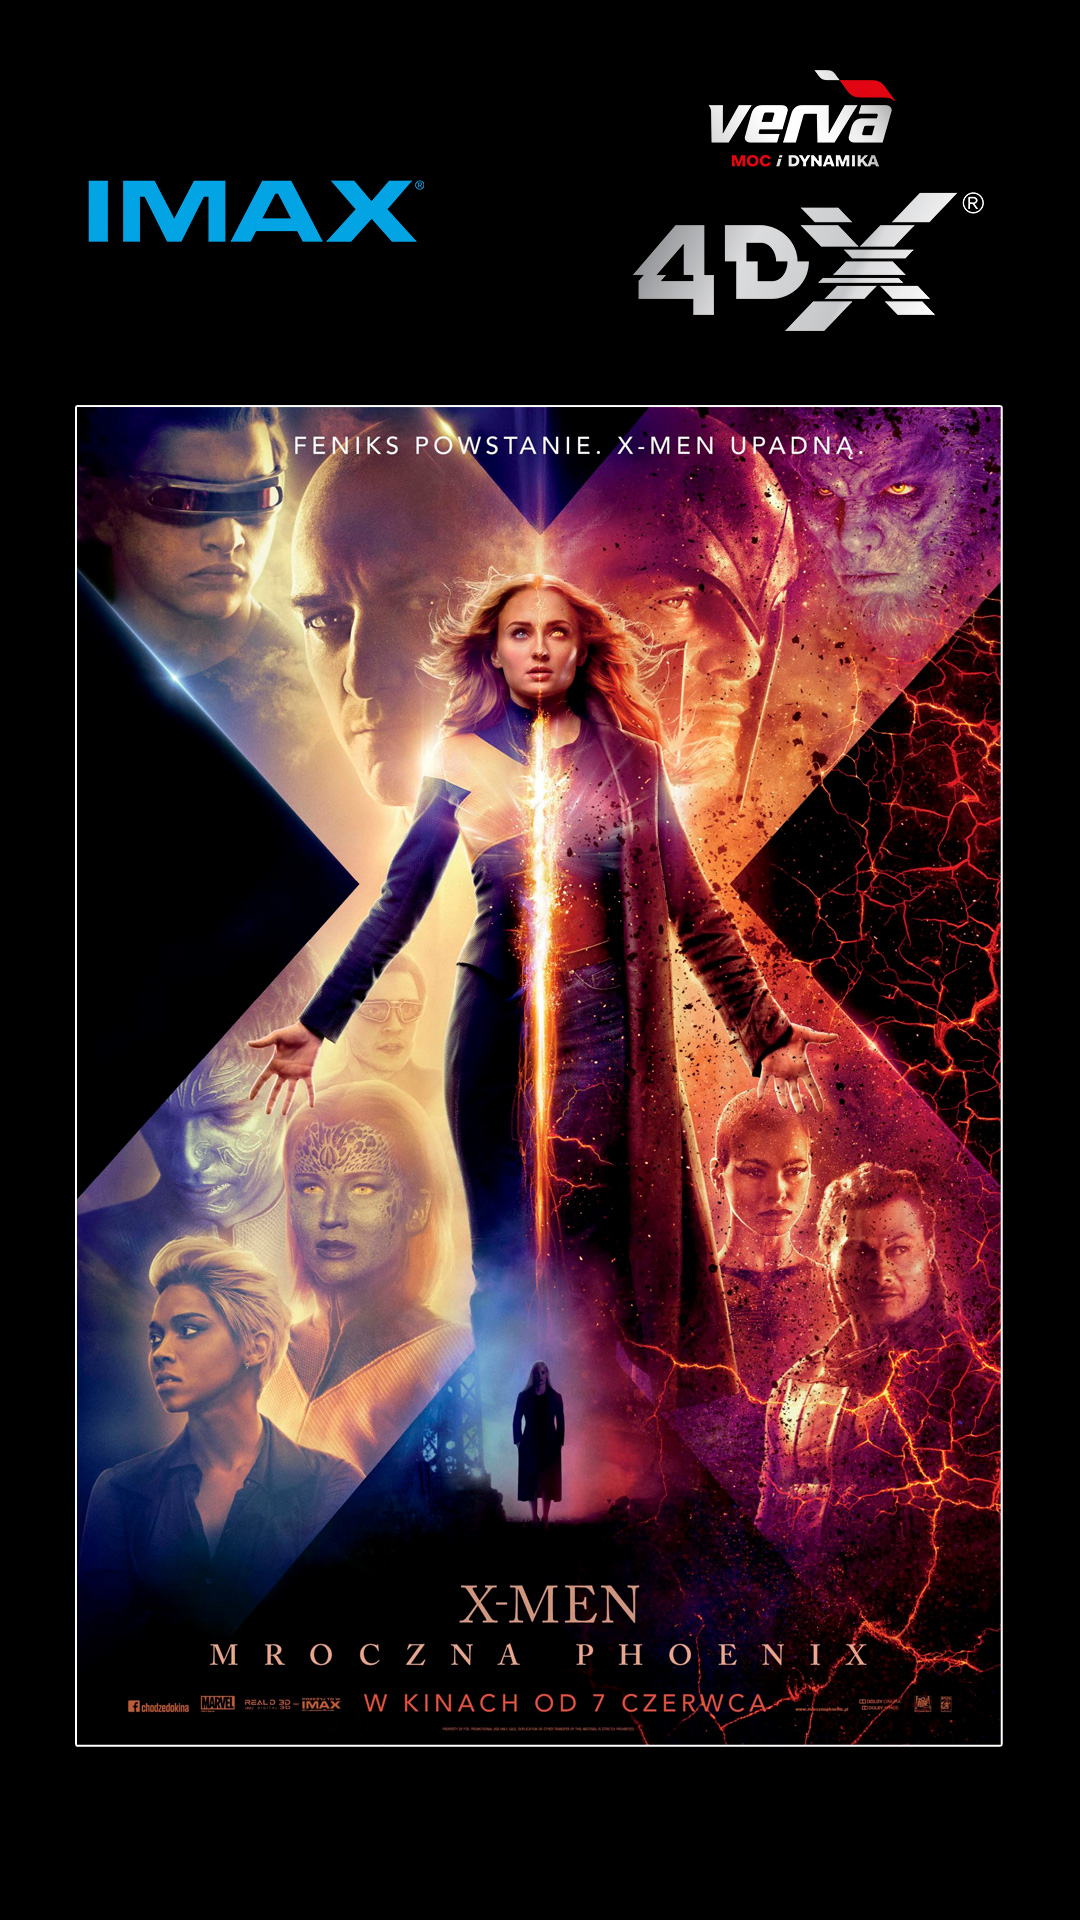 X-Men: Mroczna Phoenix, Cinema City, Imax, 4dx